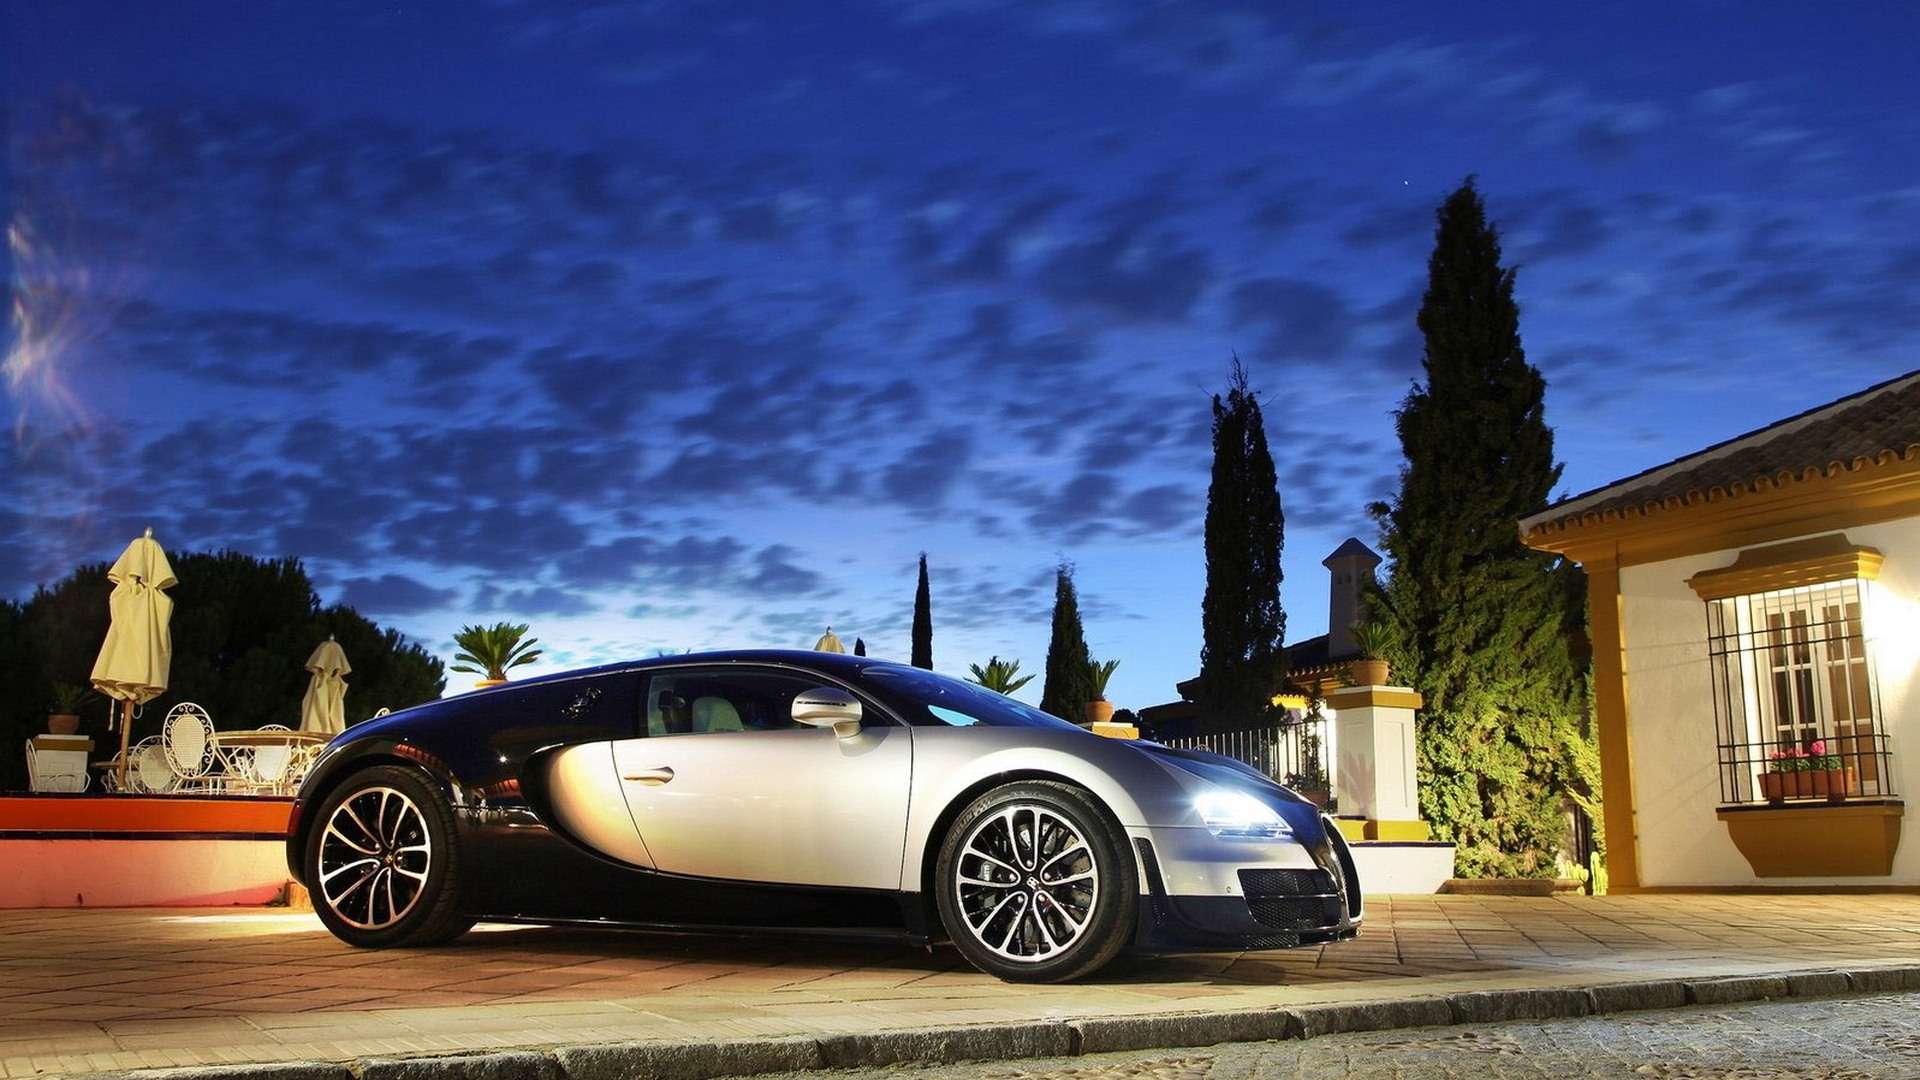 Descarga gratuita de fondo de pantalla para móvil de Bugatti Veyron, Vehículos.